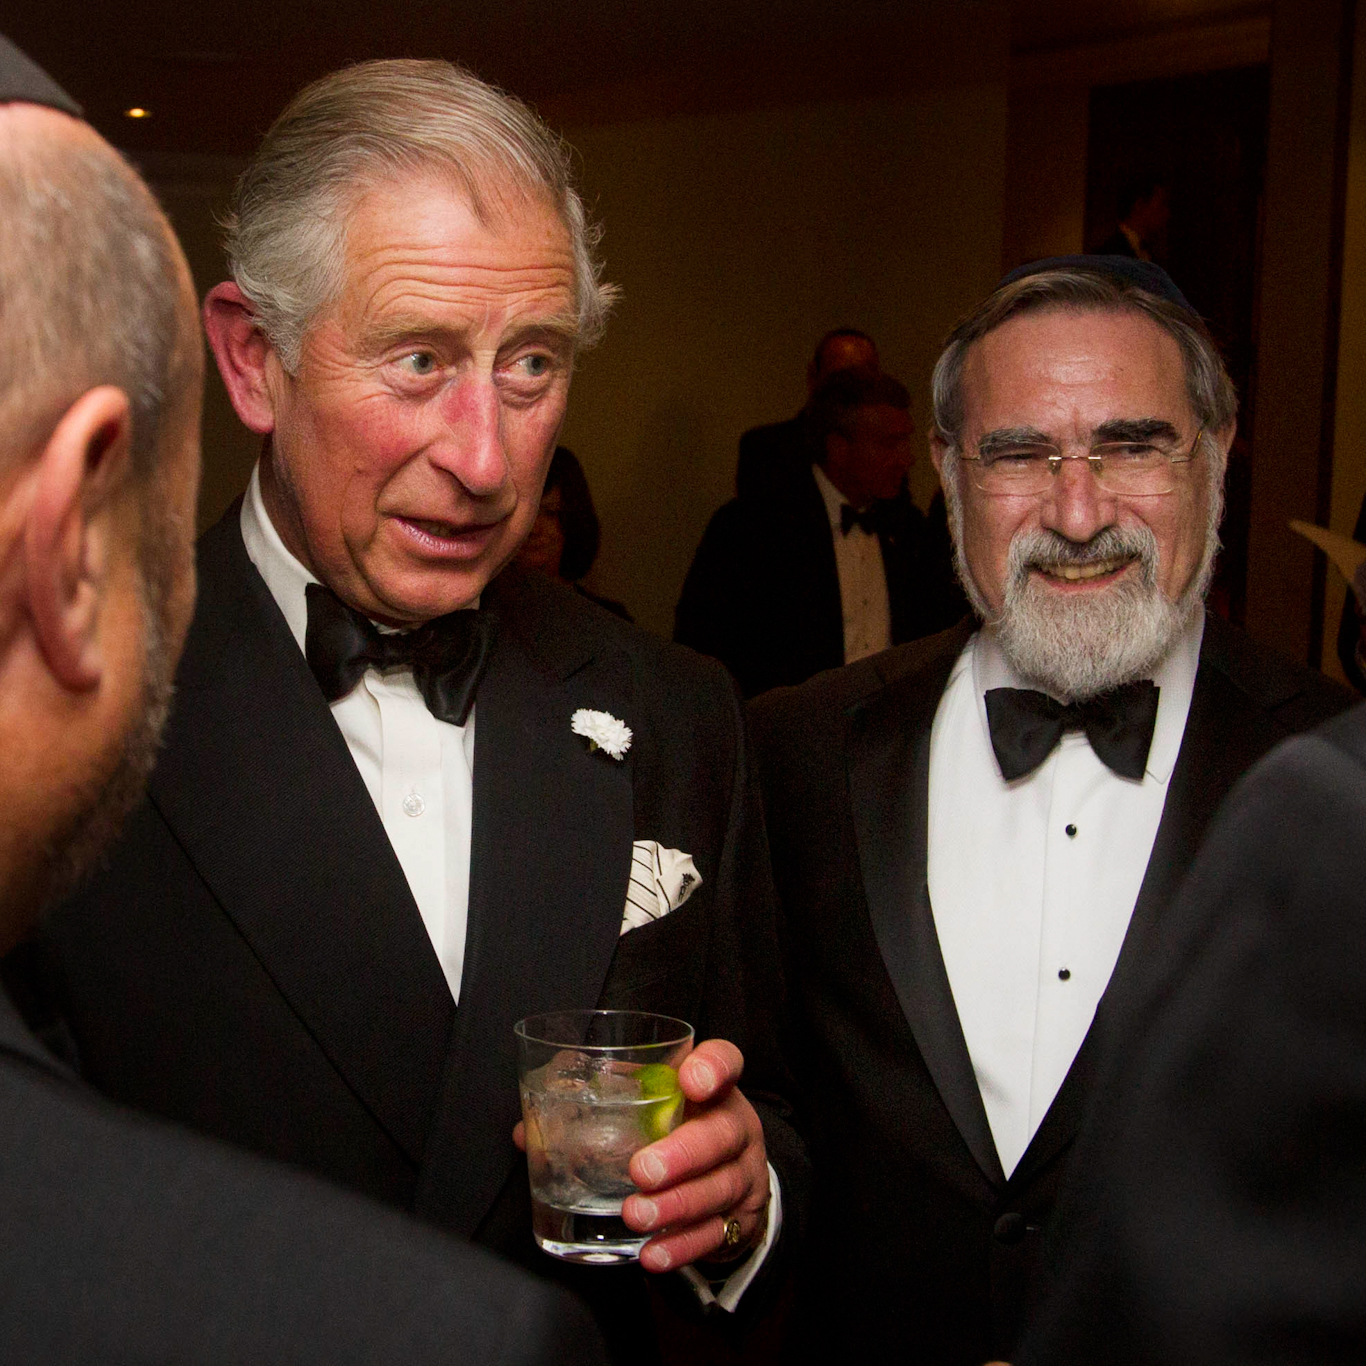 El entonces príncipe Carlos habla con los invitados durante una cena tributo a Lord Sacks, el 24 de junio de 2013. Lewis Whyld | Cable PA